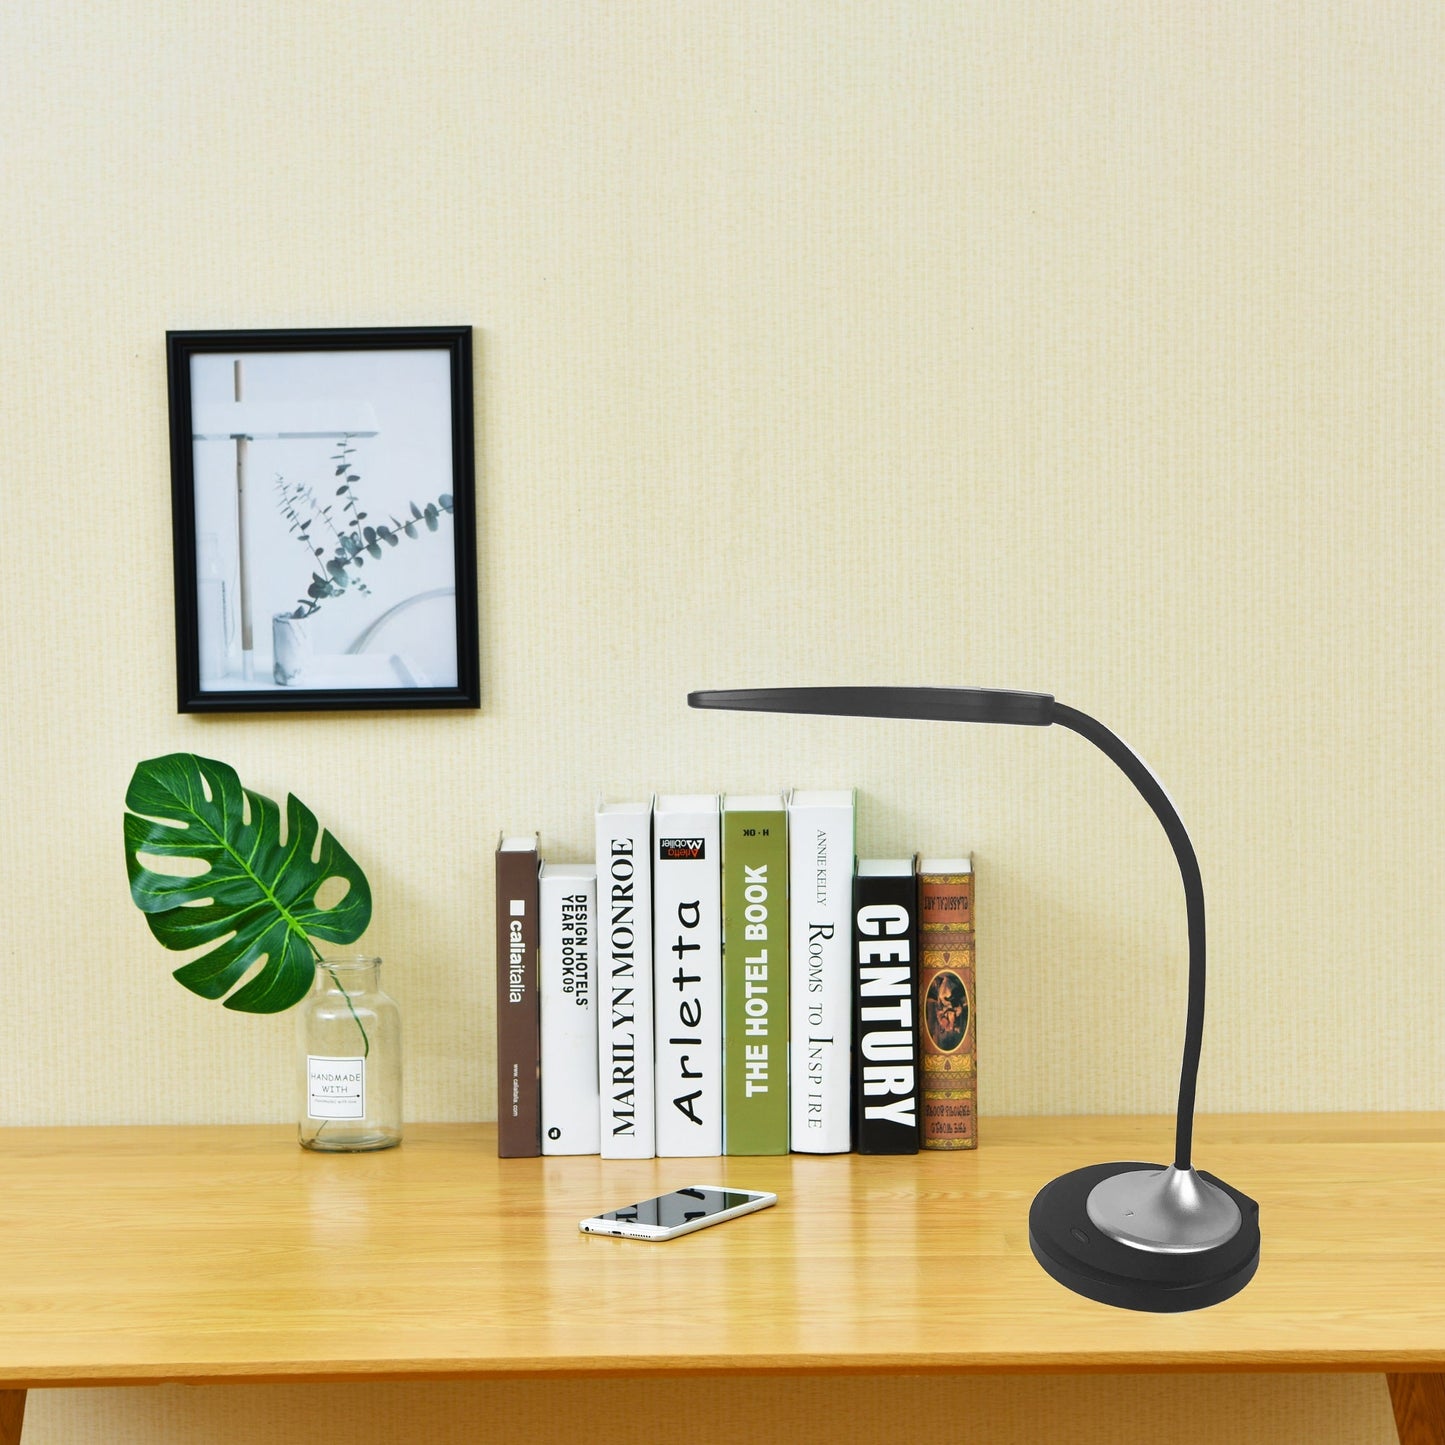 DAC® MP-354 Lampe de bureau/lampe de table LED réglable avec port de chargement USB, argent et noir